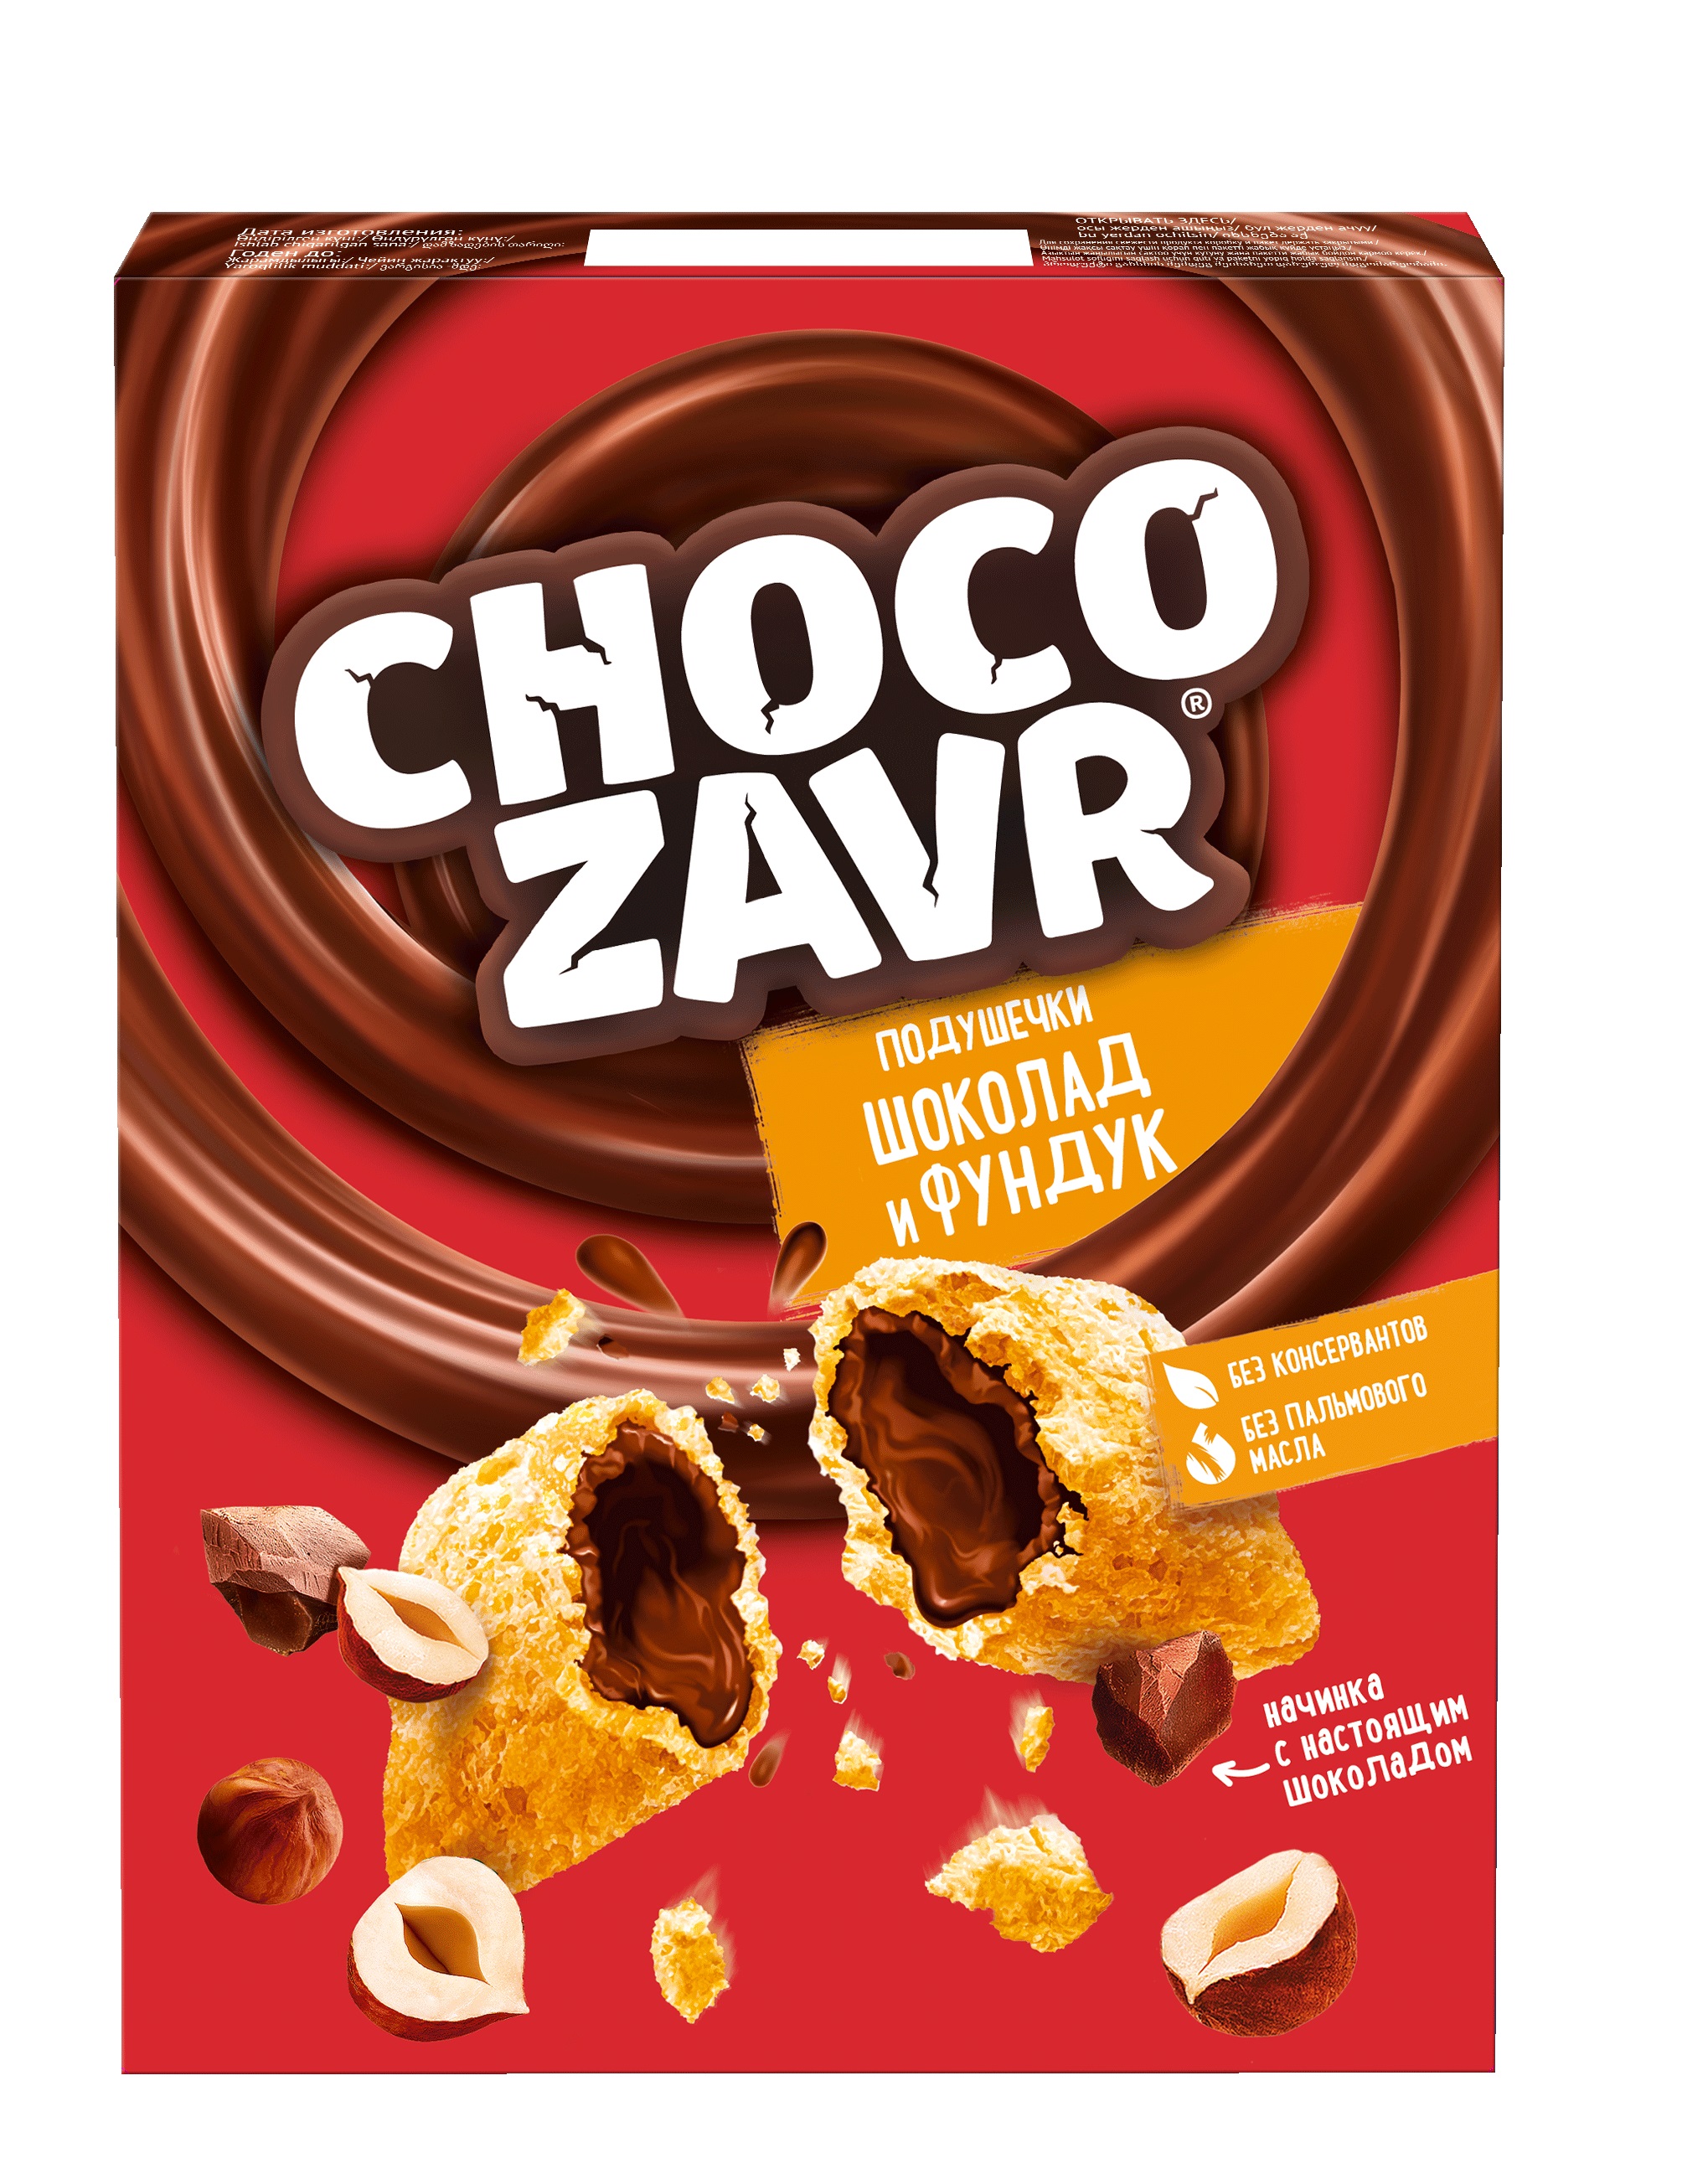 Завтрак Чокозавр подушечки шоколад-орех начинка 220г к/кор